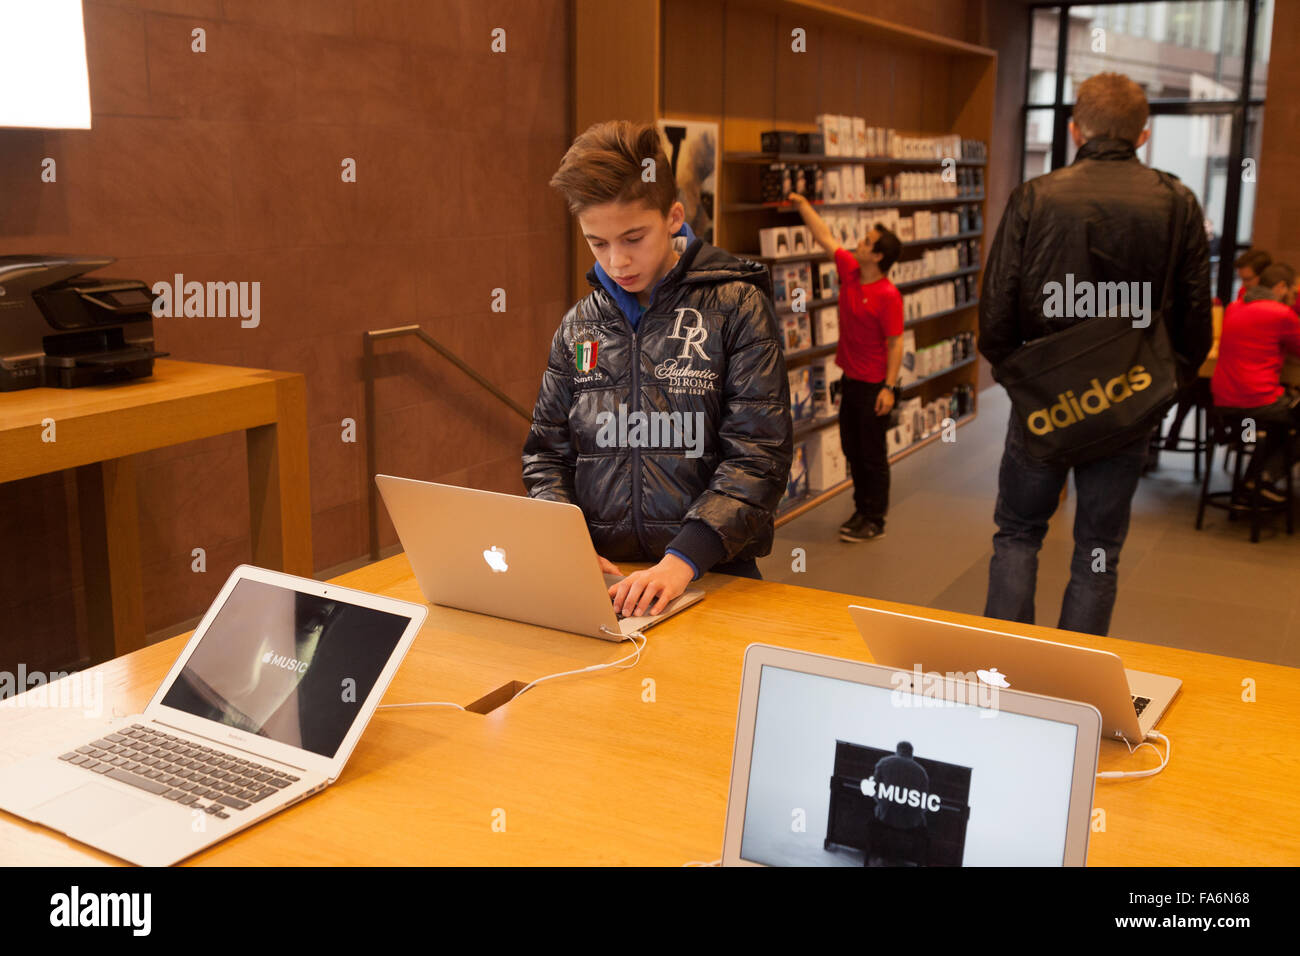 Un adolescent à l'aide d'un ordinateur portable Apple Macbook dans l'Apple store, Strasbourg, France Europe Banque D'Images